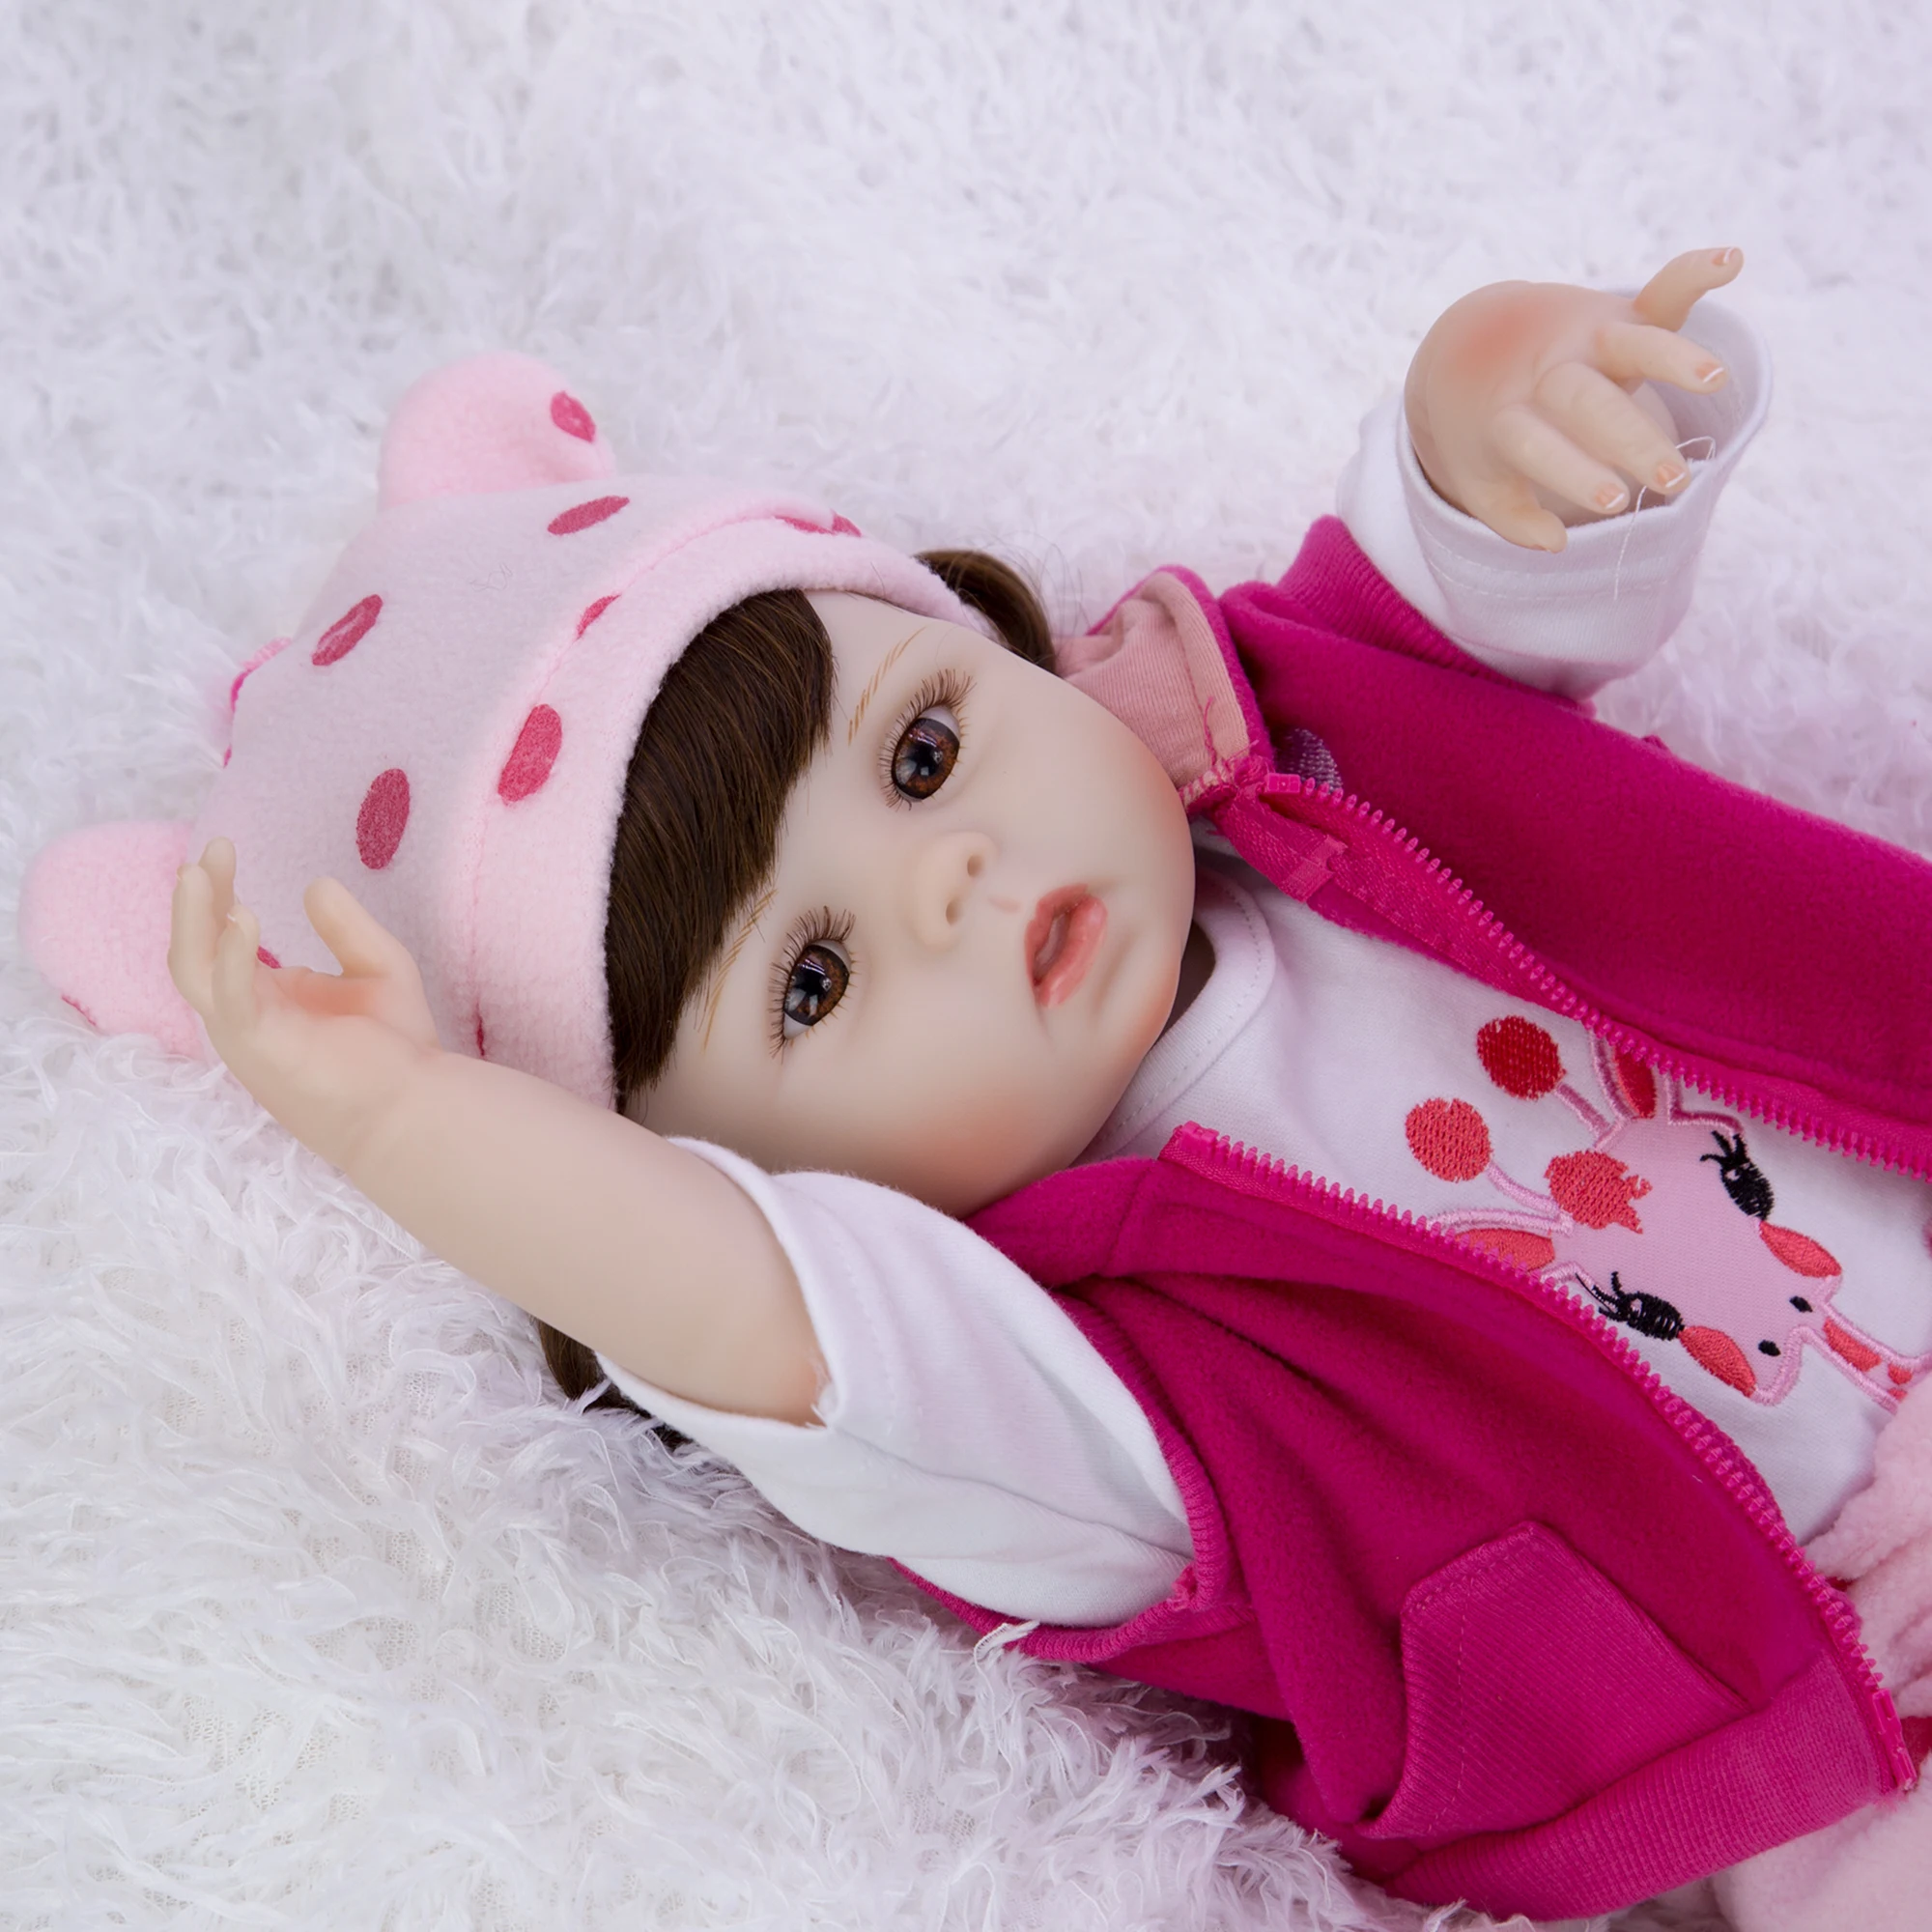 KEIUMI 19 дюймов Reborn Baby Doll Силиконовые Яркий принцесса стильная Reborn Baby Menina кукла, винил Boneca для детей для дня рождения